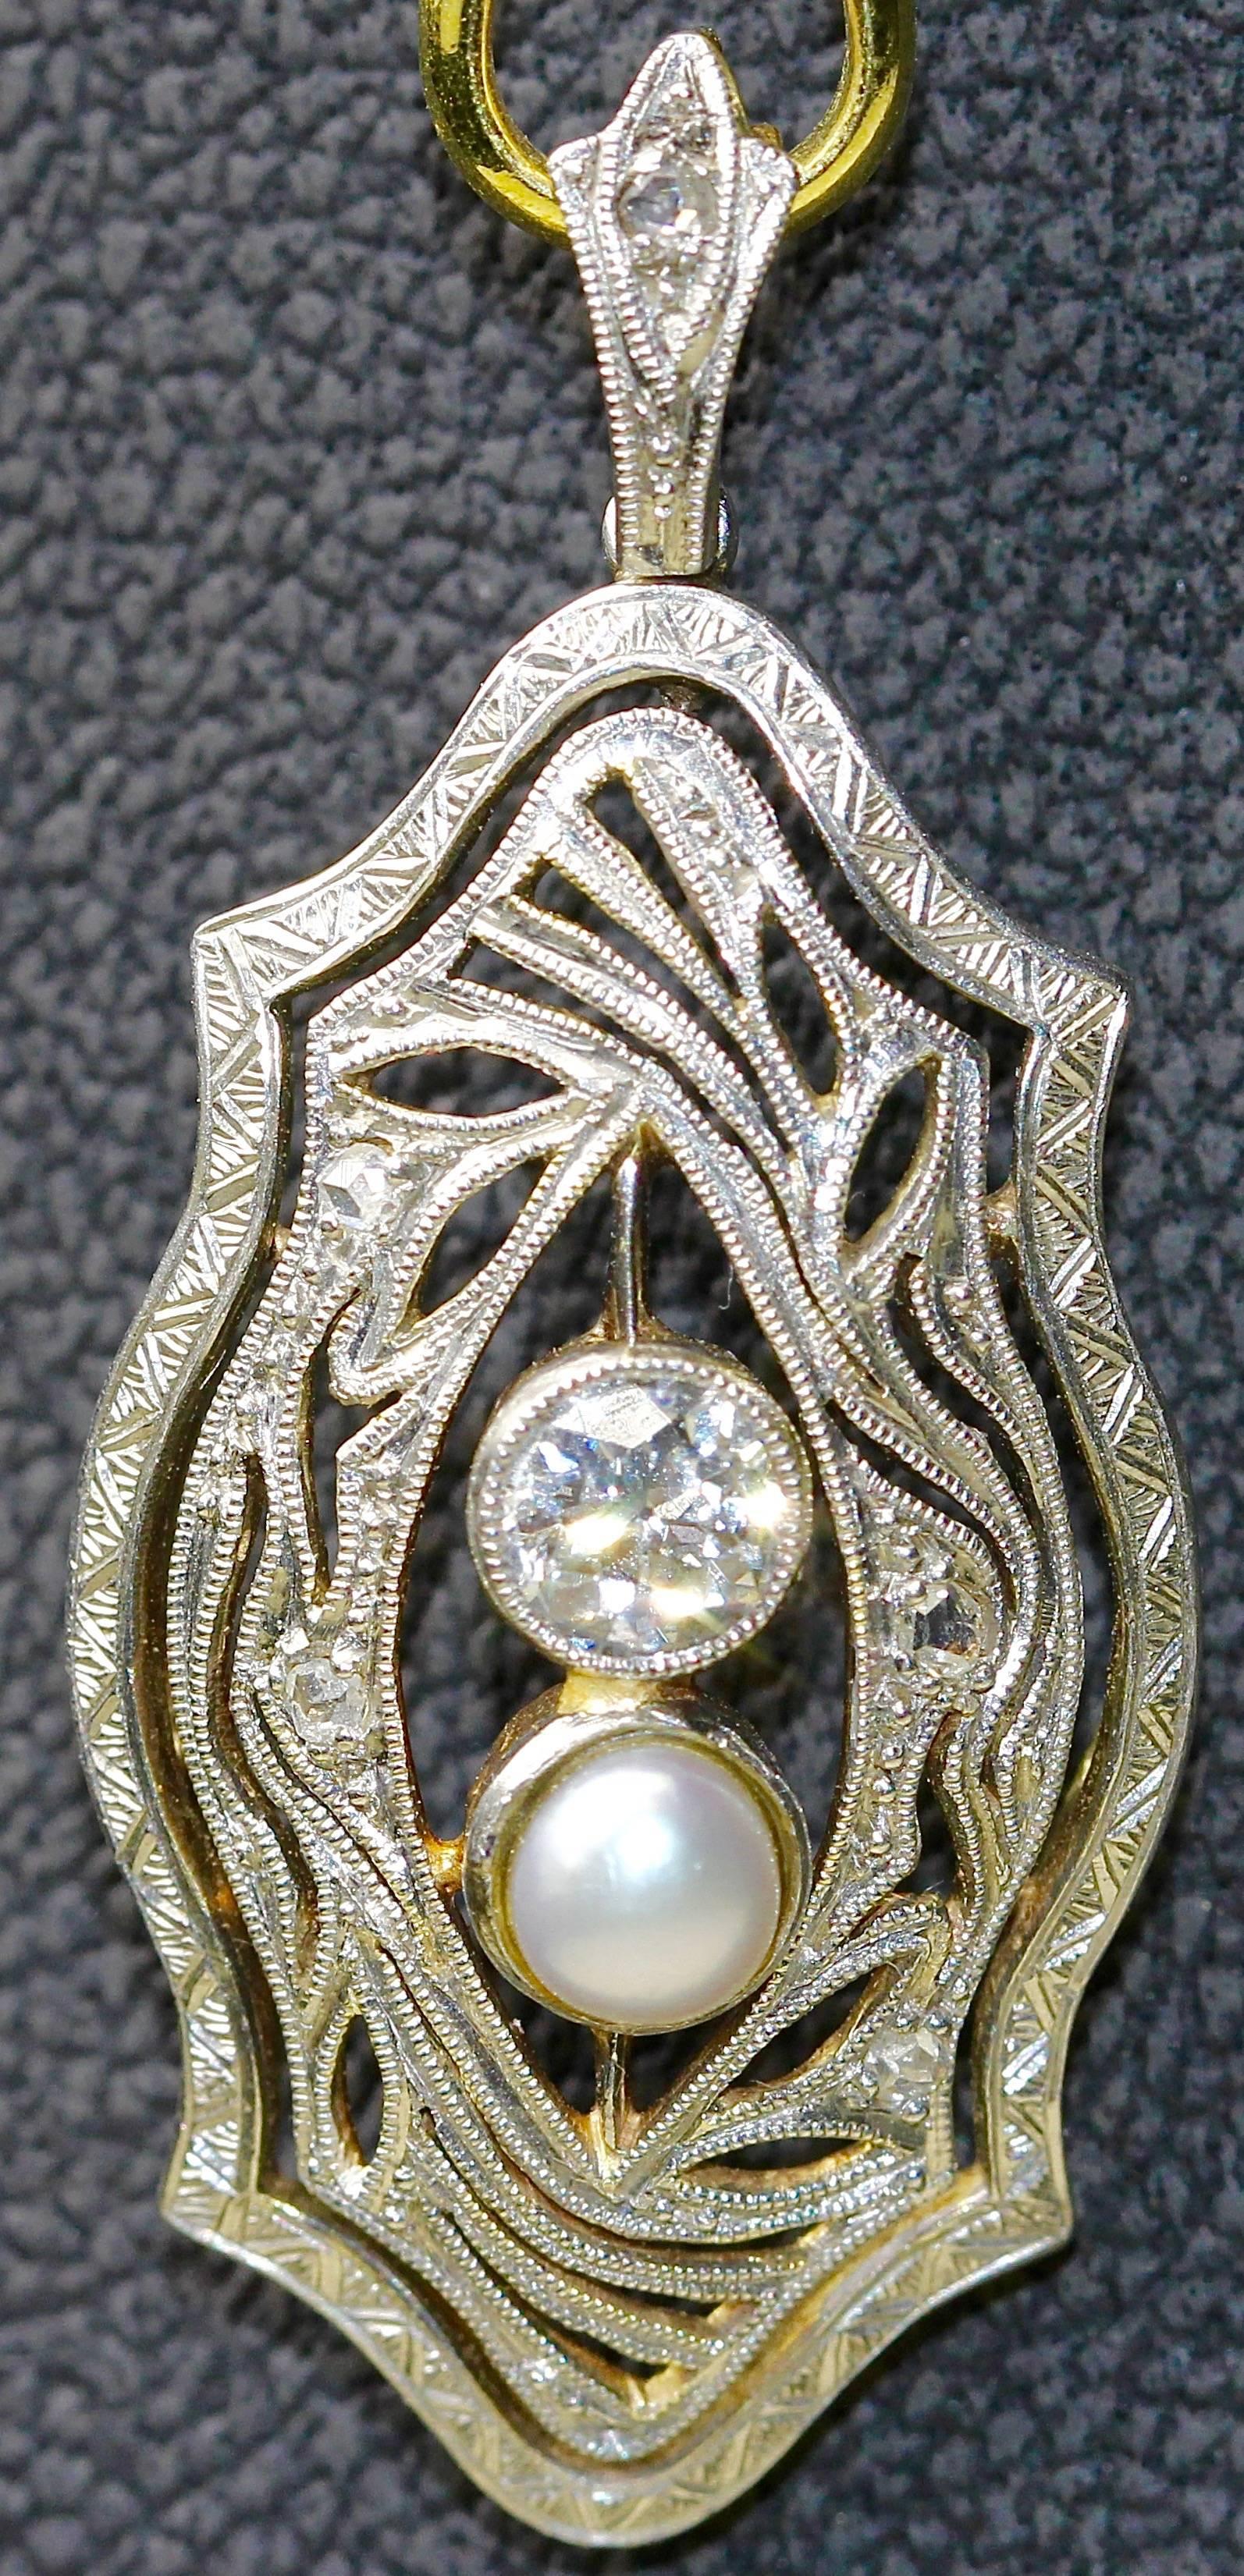 Bezaubernde Art Deco Halskette Enhancer (Anhänger) mit großem Diamanten von ca. 0,4 Karat (P / weiß) und einer Perle von ca. 4,5 mm.
Höhe ohne Öse gemessen.